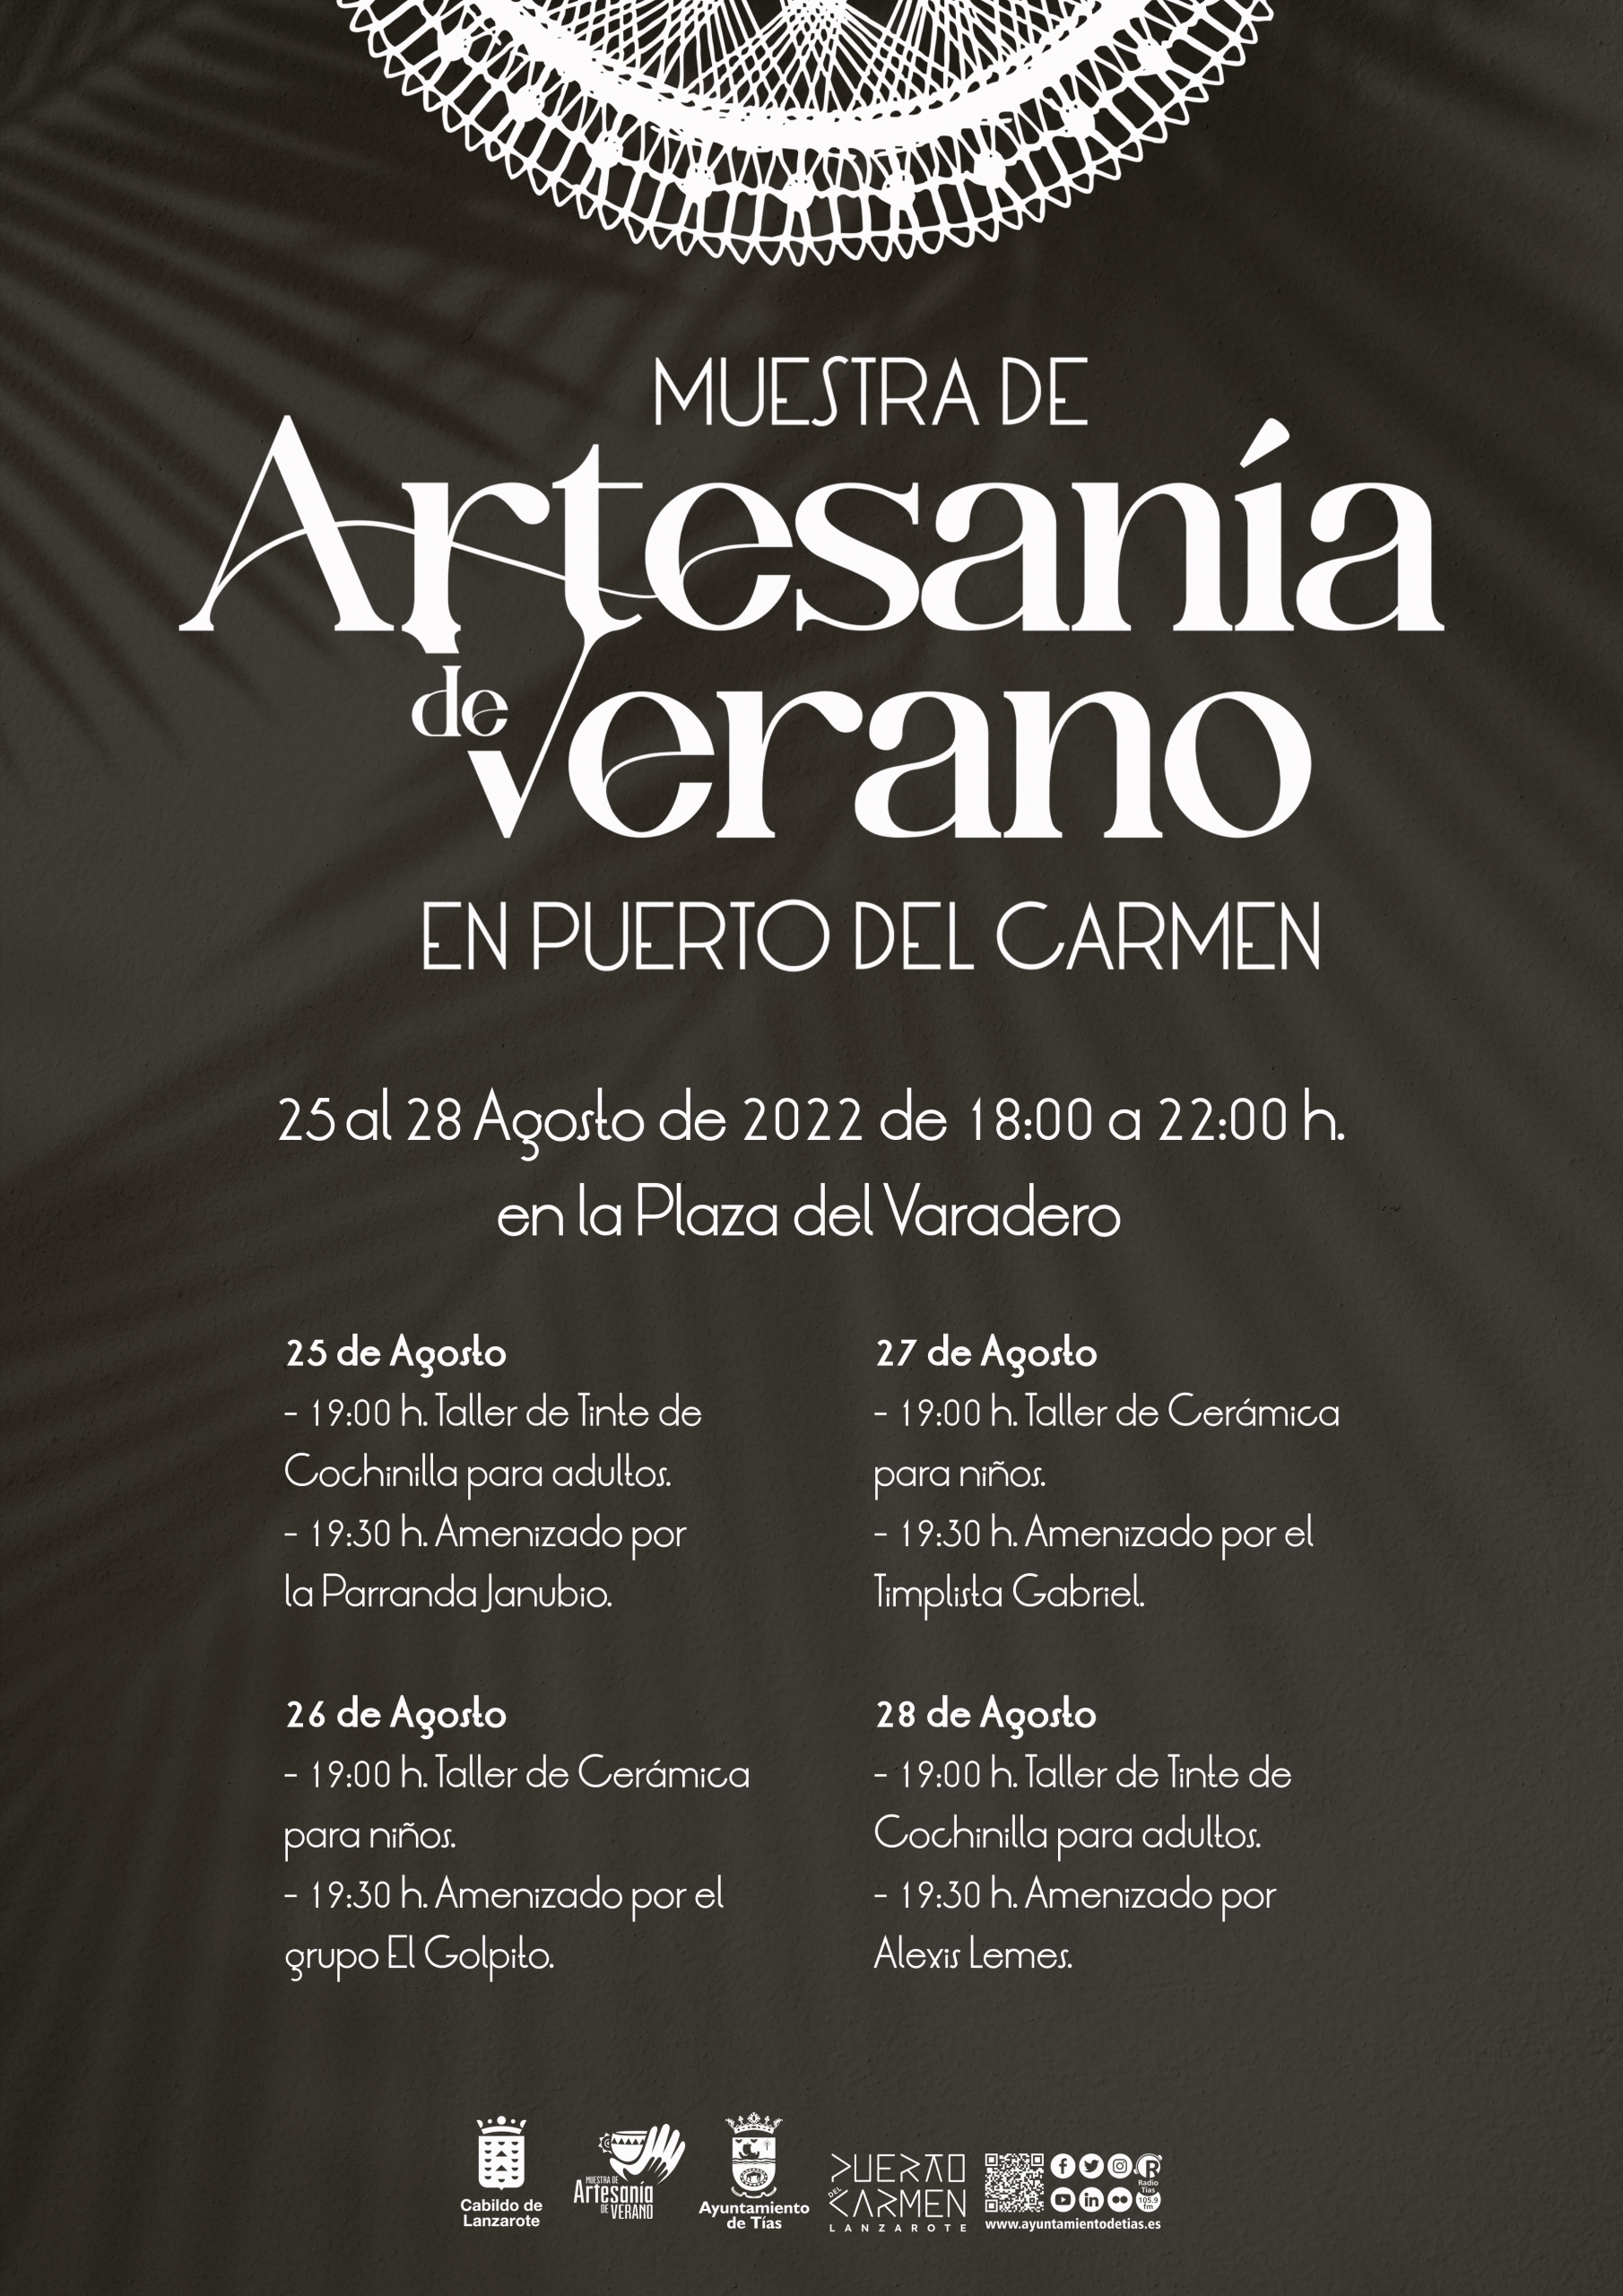 Muestra de Artesanía de Verano en Puerto del Carmen del 25 al 28 de agosto